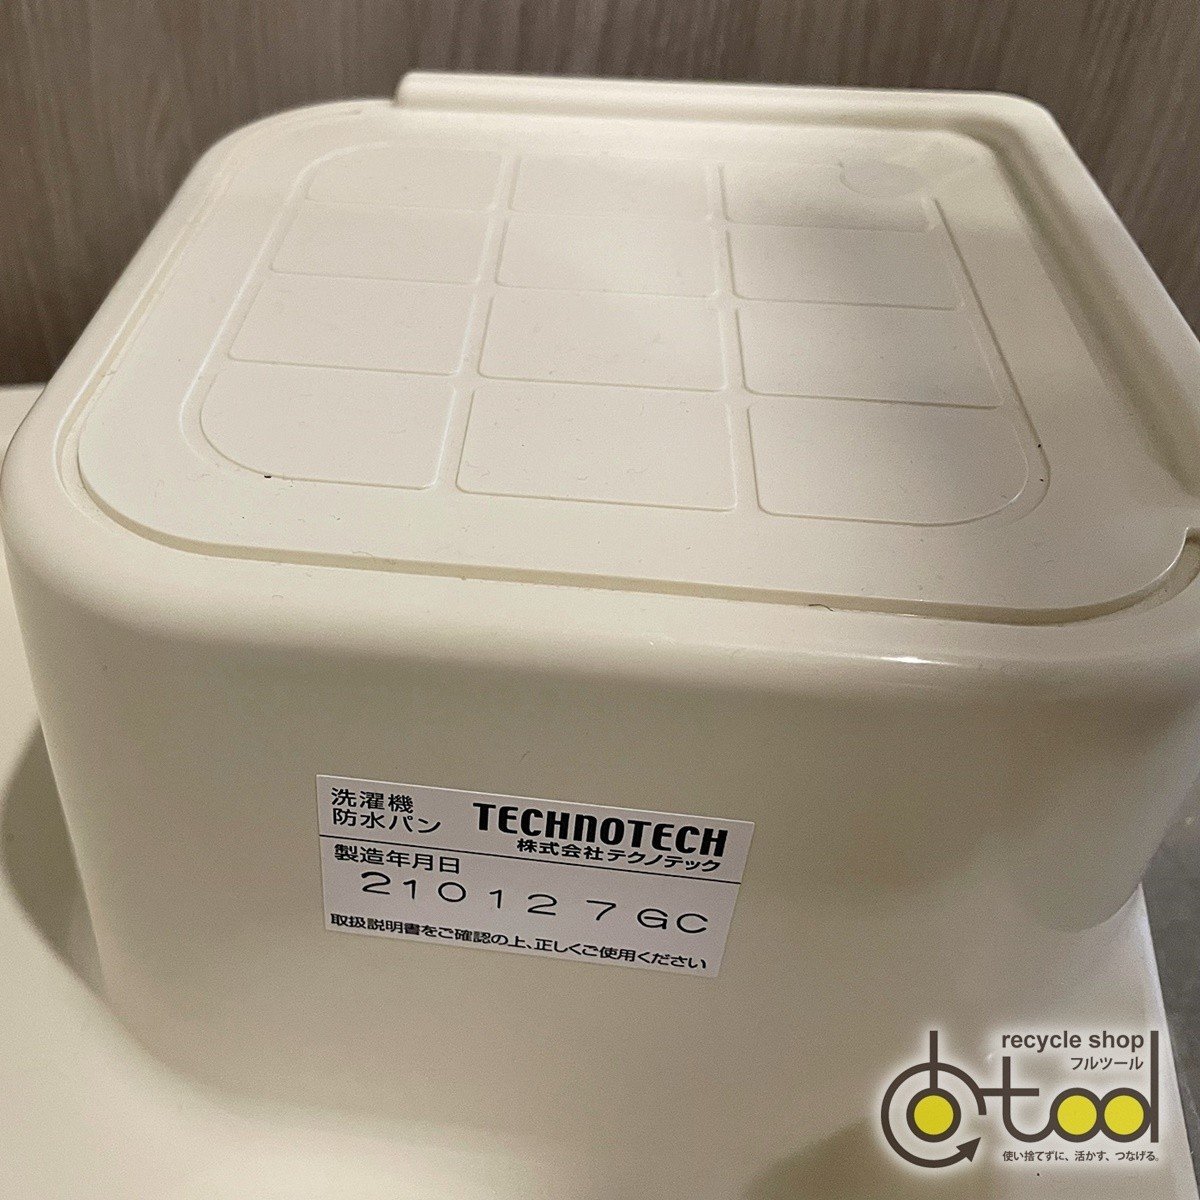 [ Osaka ] Techno Tec производства поддон под стиральную машину ( водонепроницаемый хлеб )/ зонт вверх модель /2021 год производства /mote Leroux m экспонирование установка товар [SRA17]